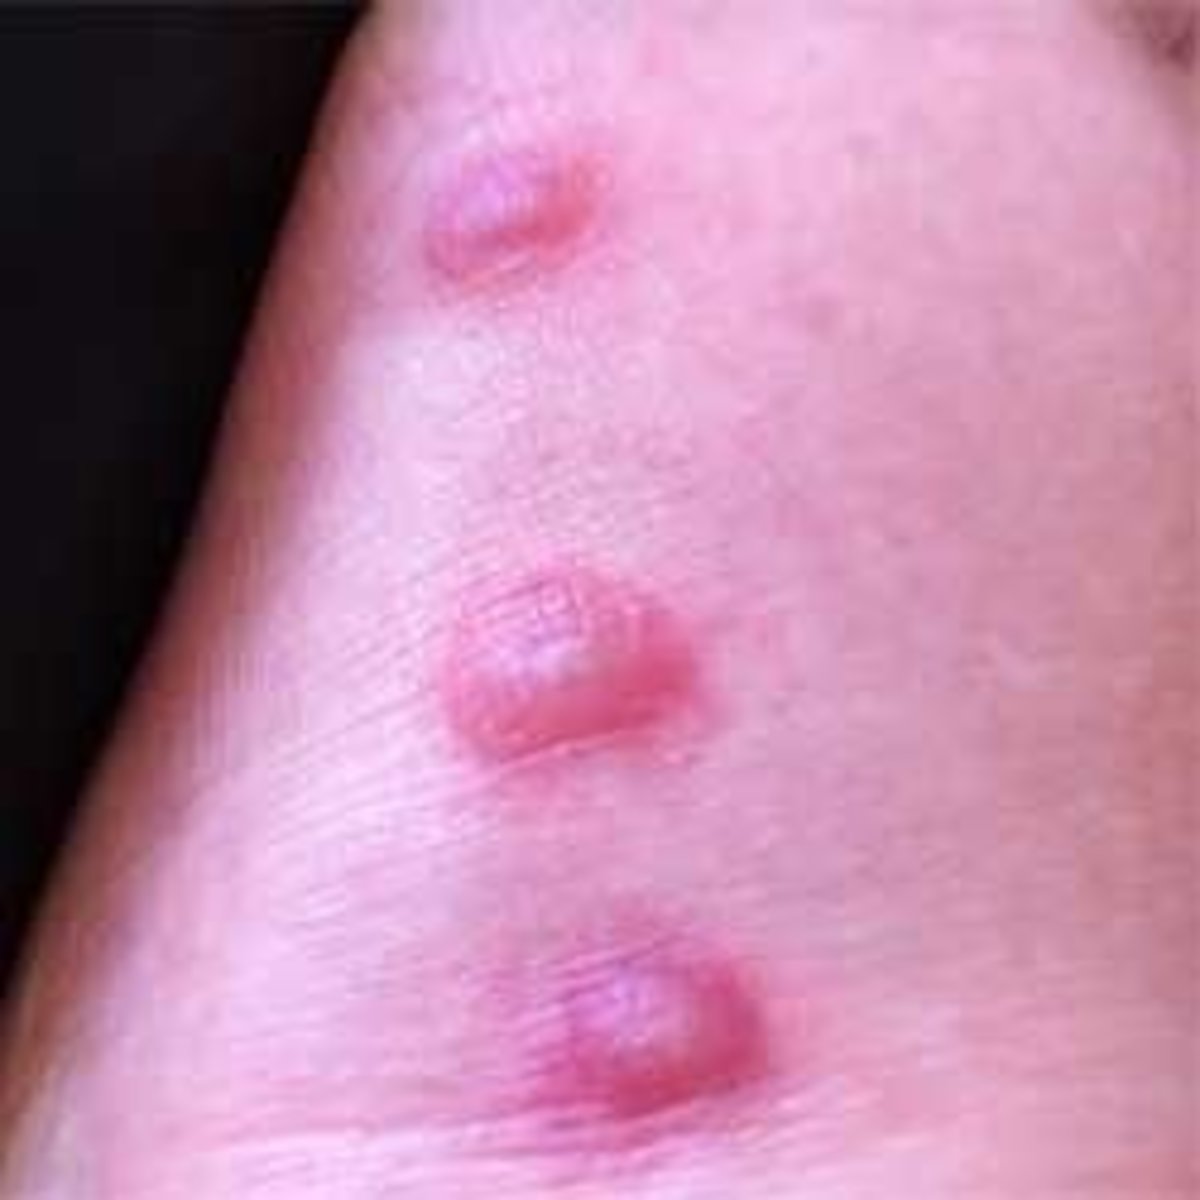 Bullous Pemphigoid | Blistering Skin Disease